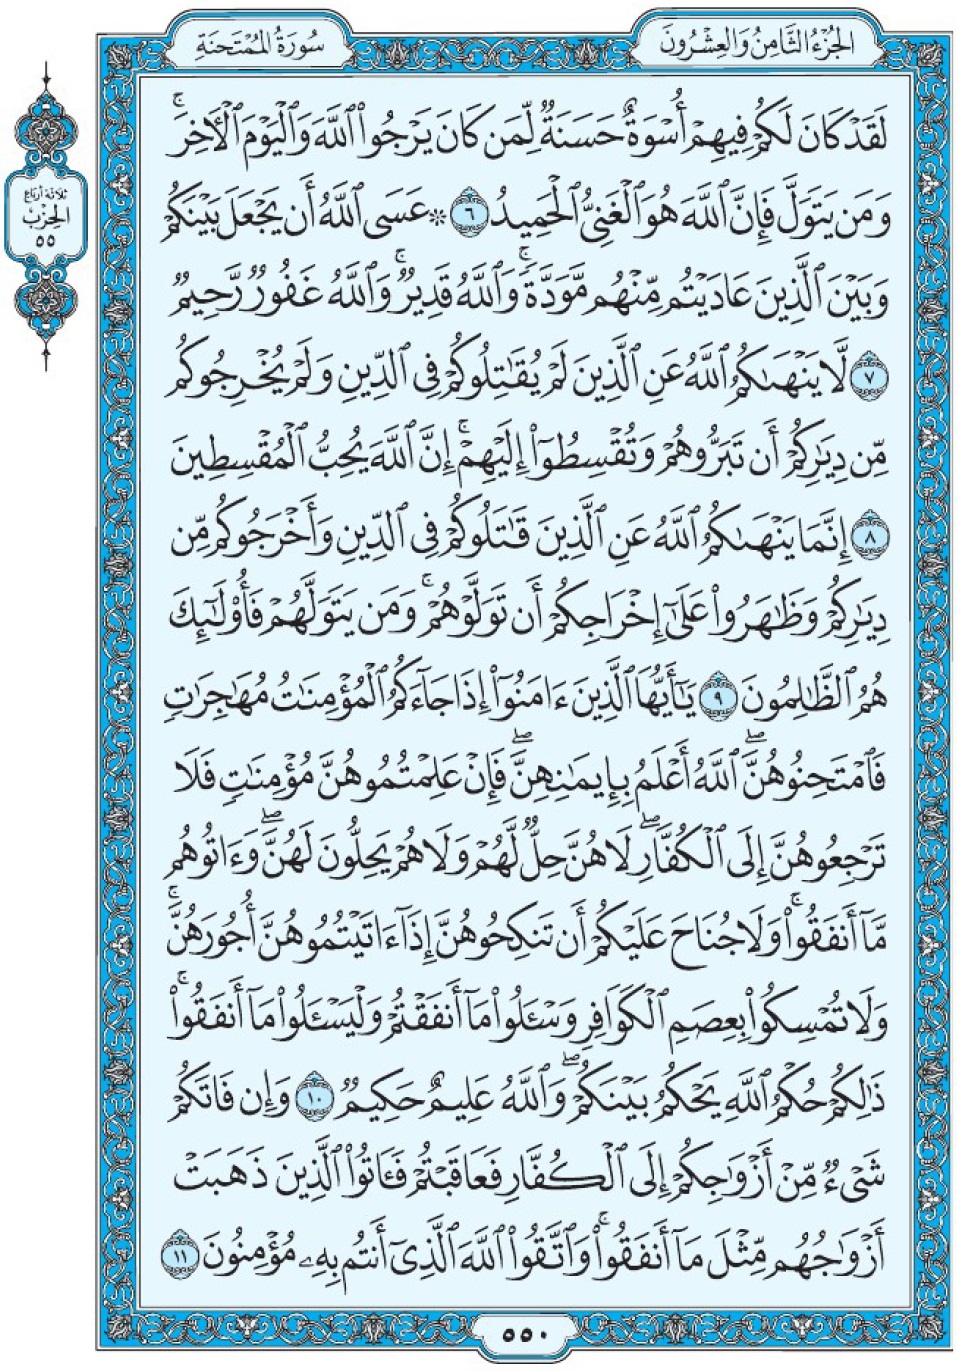 Коран Мединский мусхаф страница 550, сура аль-Мумтахана, аят 6-11